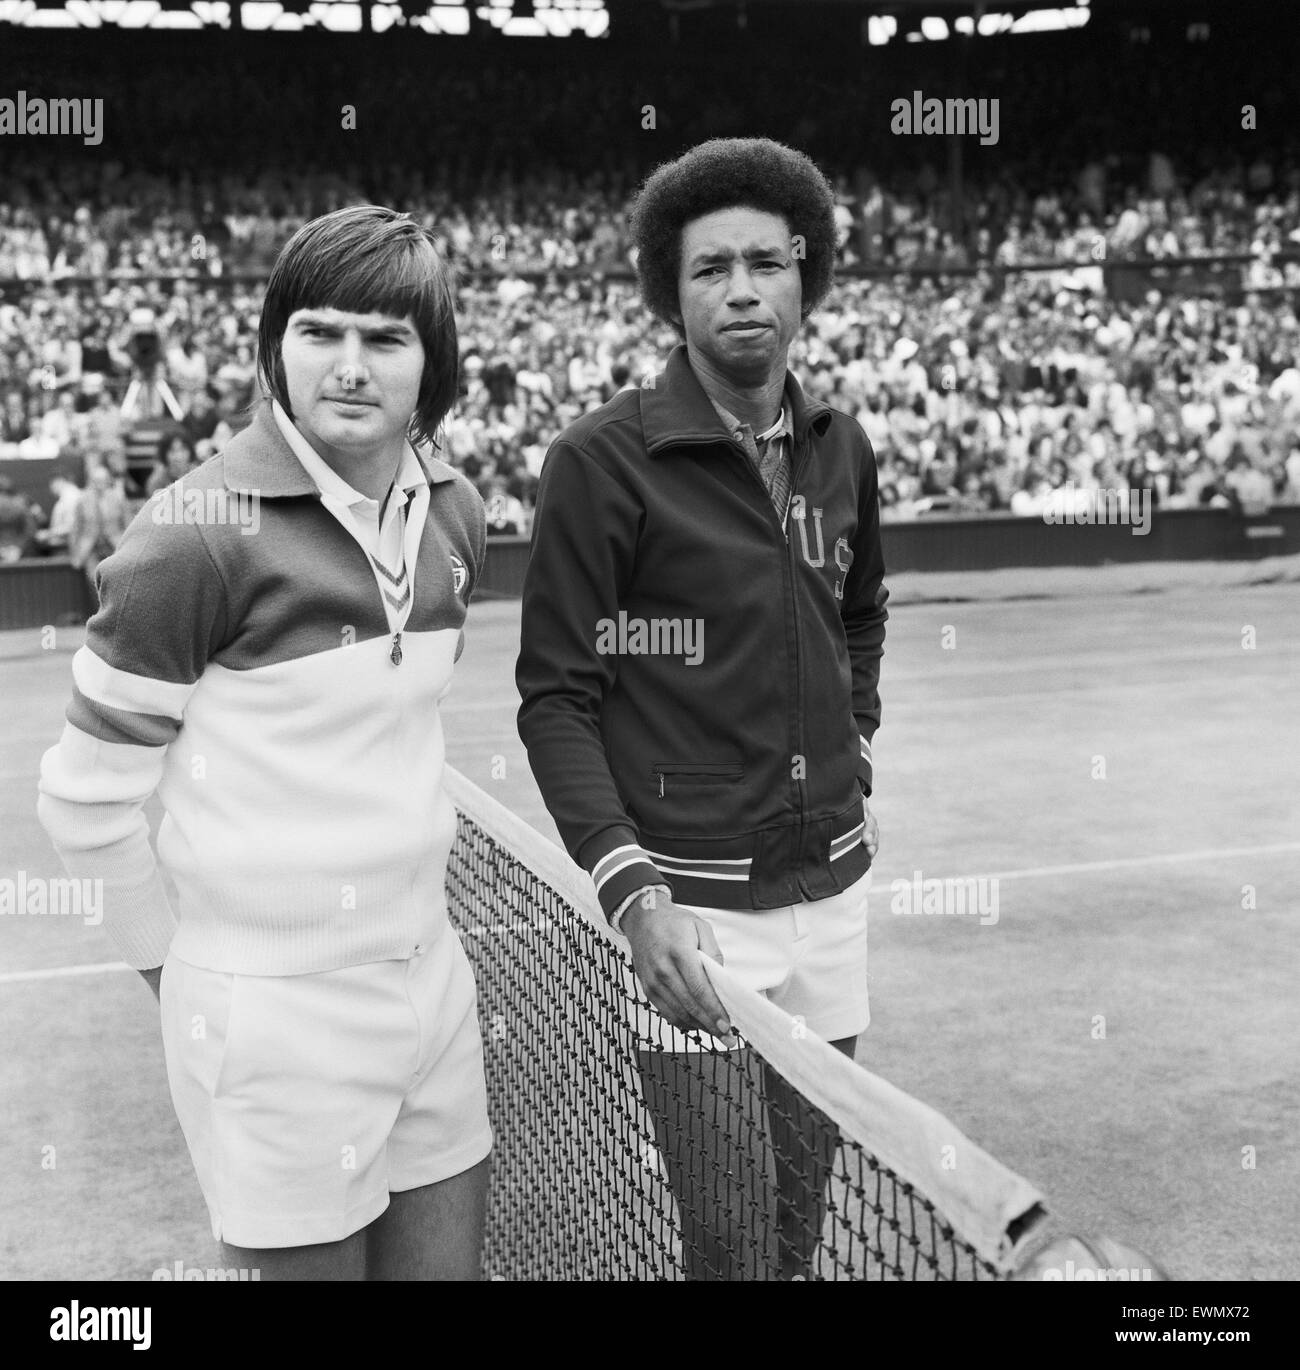 Arthur Robert Ashe, Jr., (10 juillet 1943 - 6 février 1993) était un monde no 1 joueur de tennis professionnel Ashe, un Afro-américain, a été le premier joueur noir sélectionné pour l'équipe de Coupe Davis des États-Unis et le seul homme noir à remporter le péché Banque D'Images